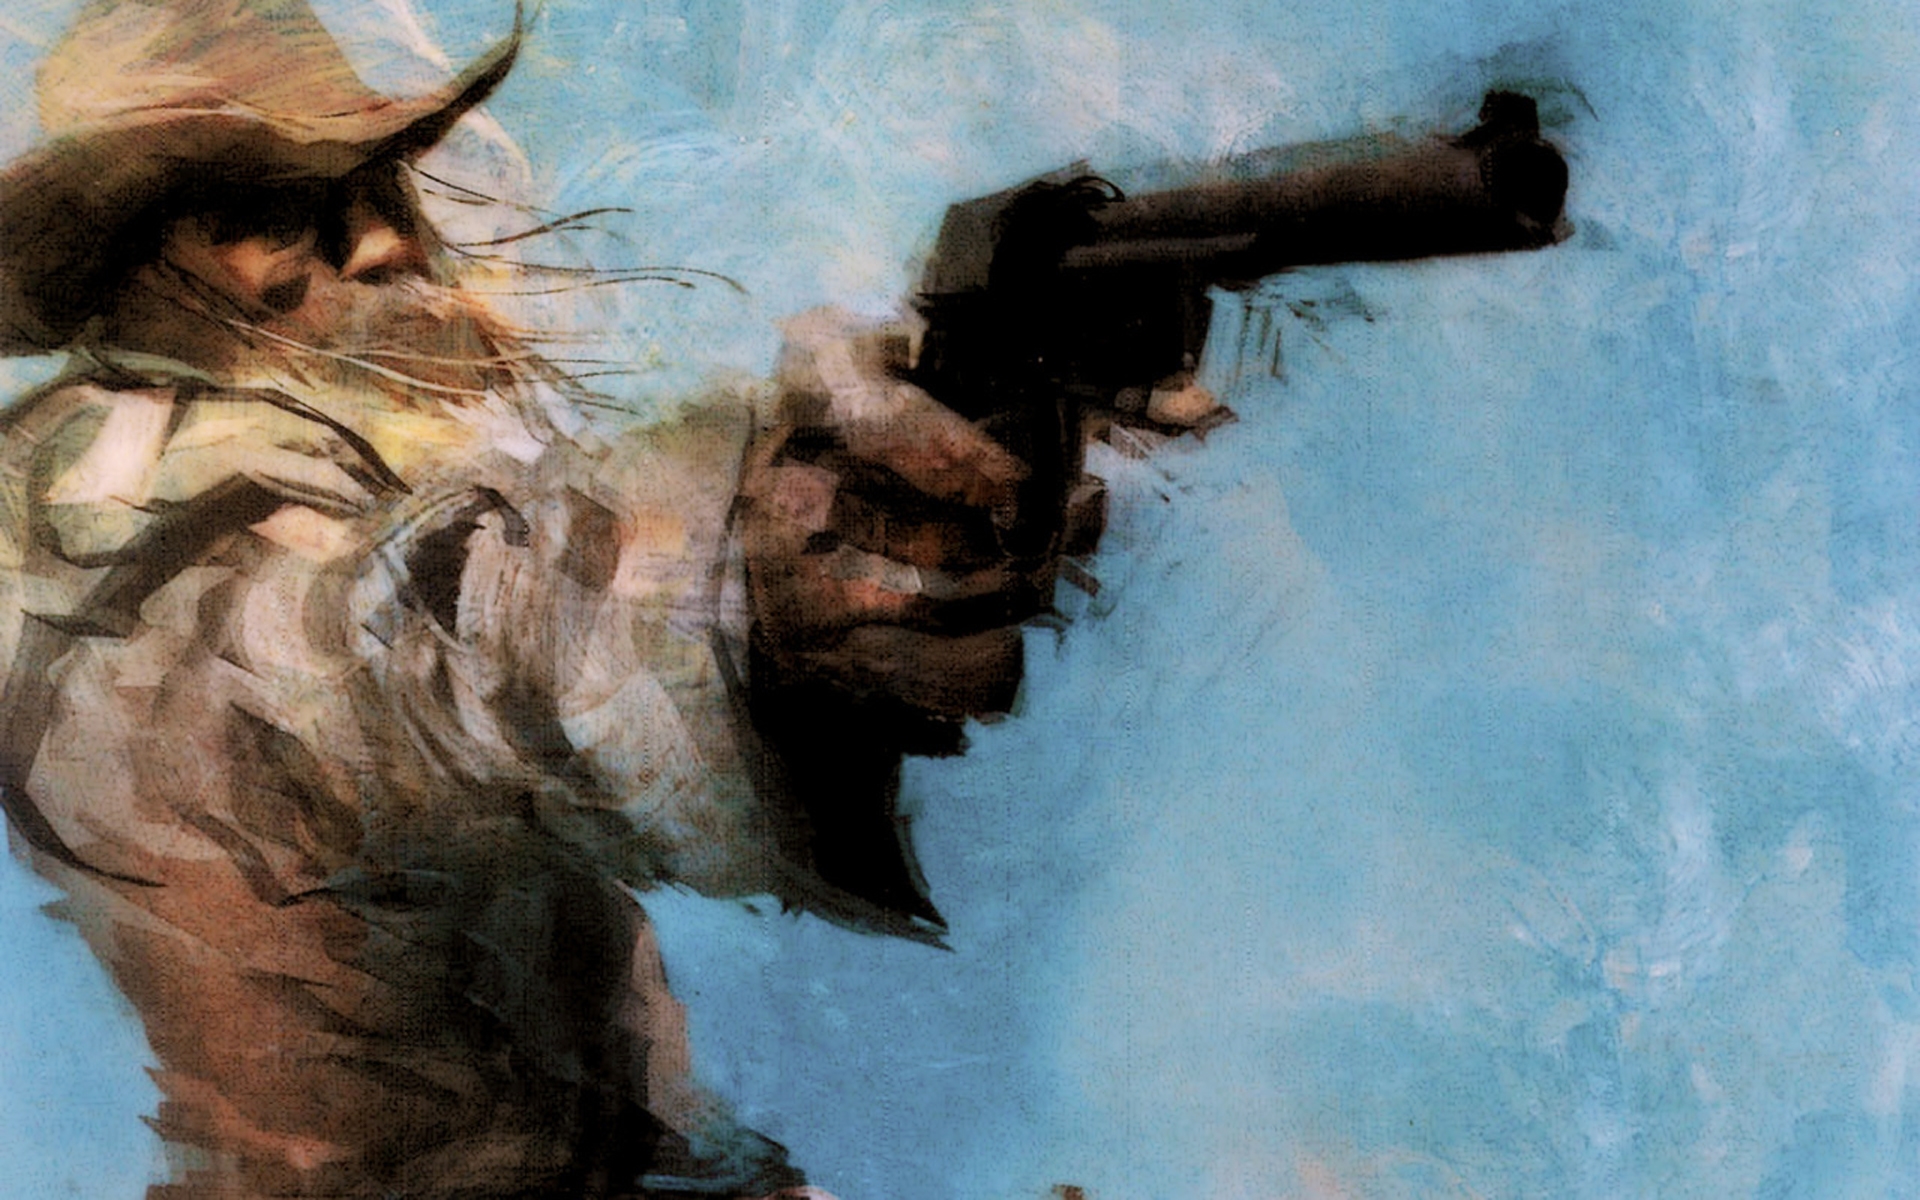 Metal Gear, pistols, cowboys, artwork, Revolver Ocelot - desktop wallpaper